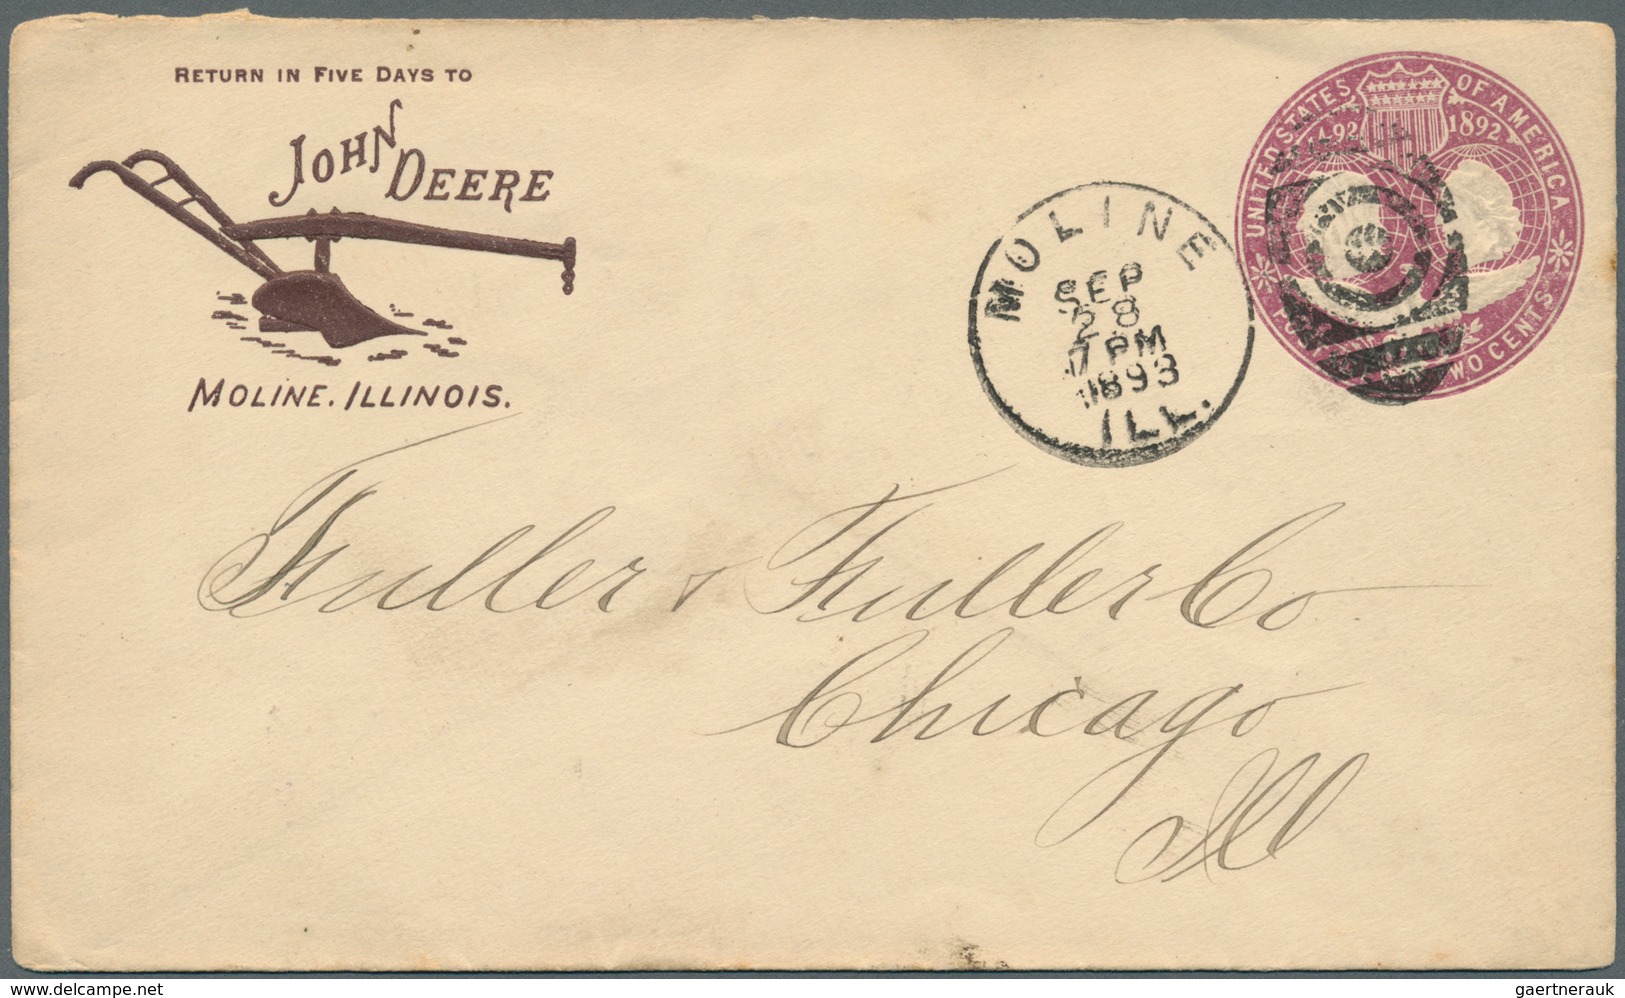 12696 Vereinigte Staaten von Amerika - Besonderheiten: 1890/1904. Lot of 7 covers/postcard bearing some at